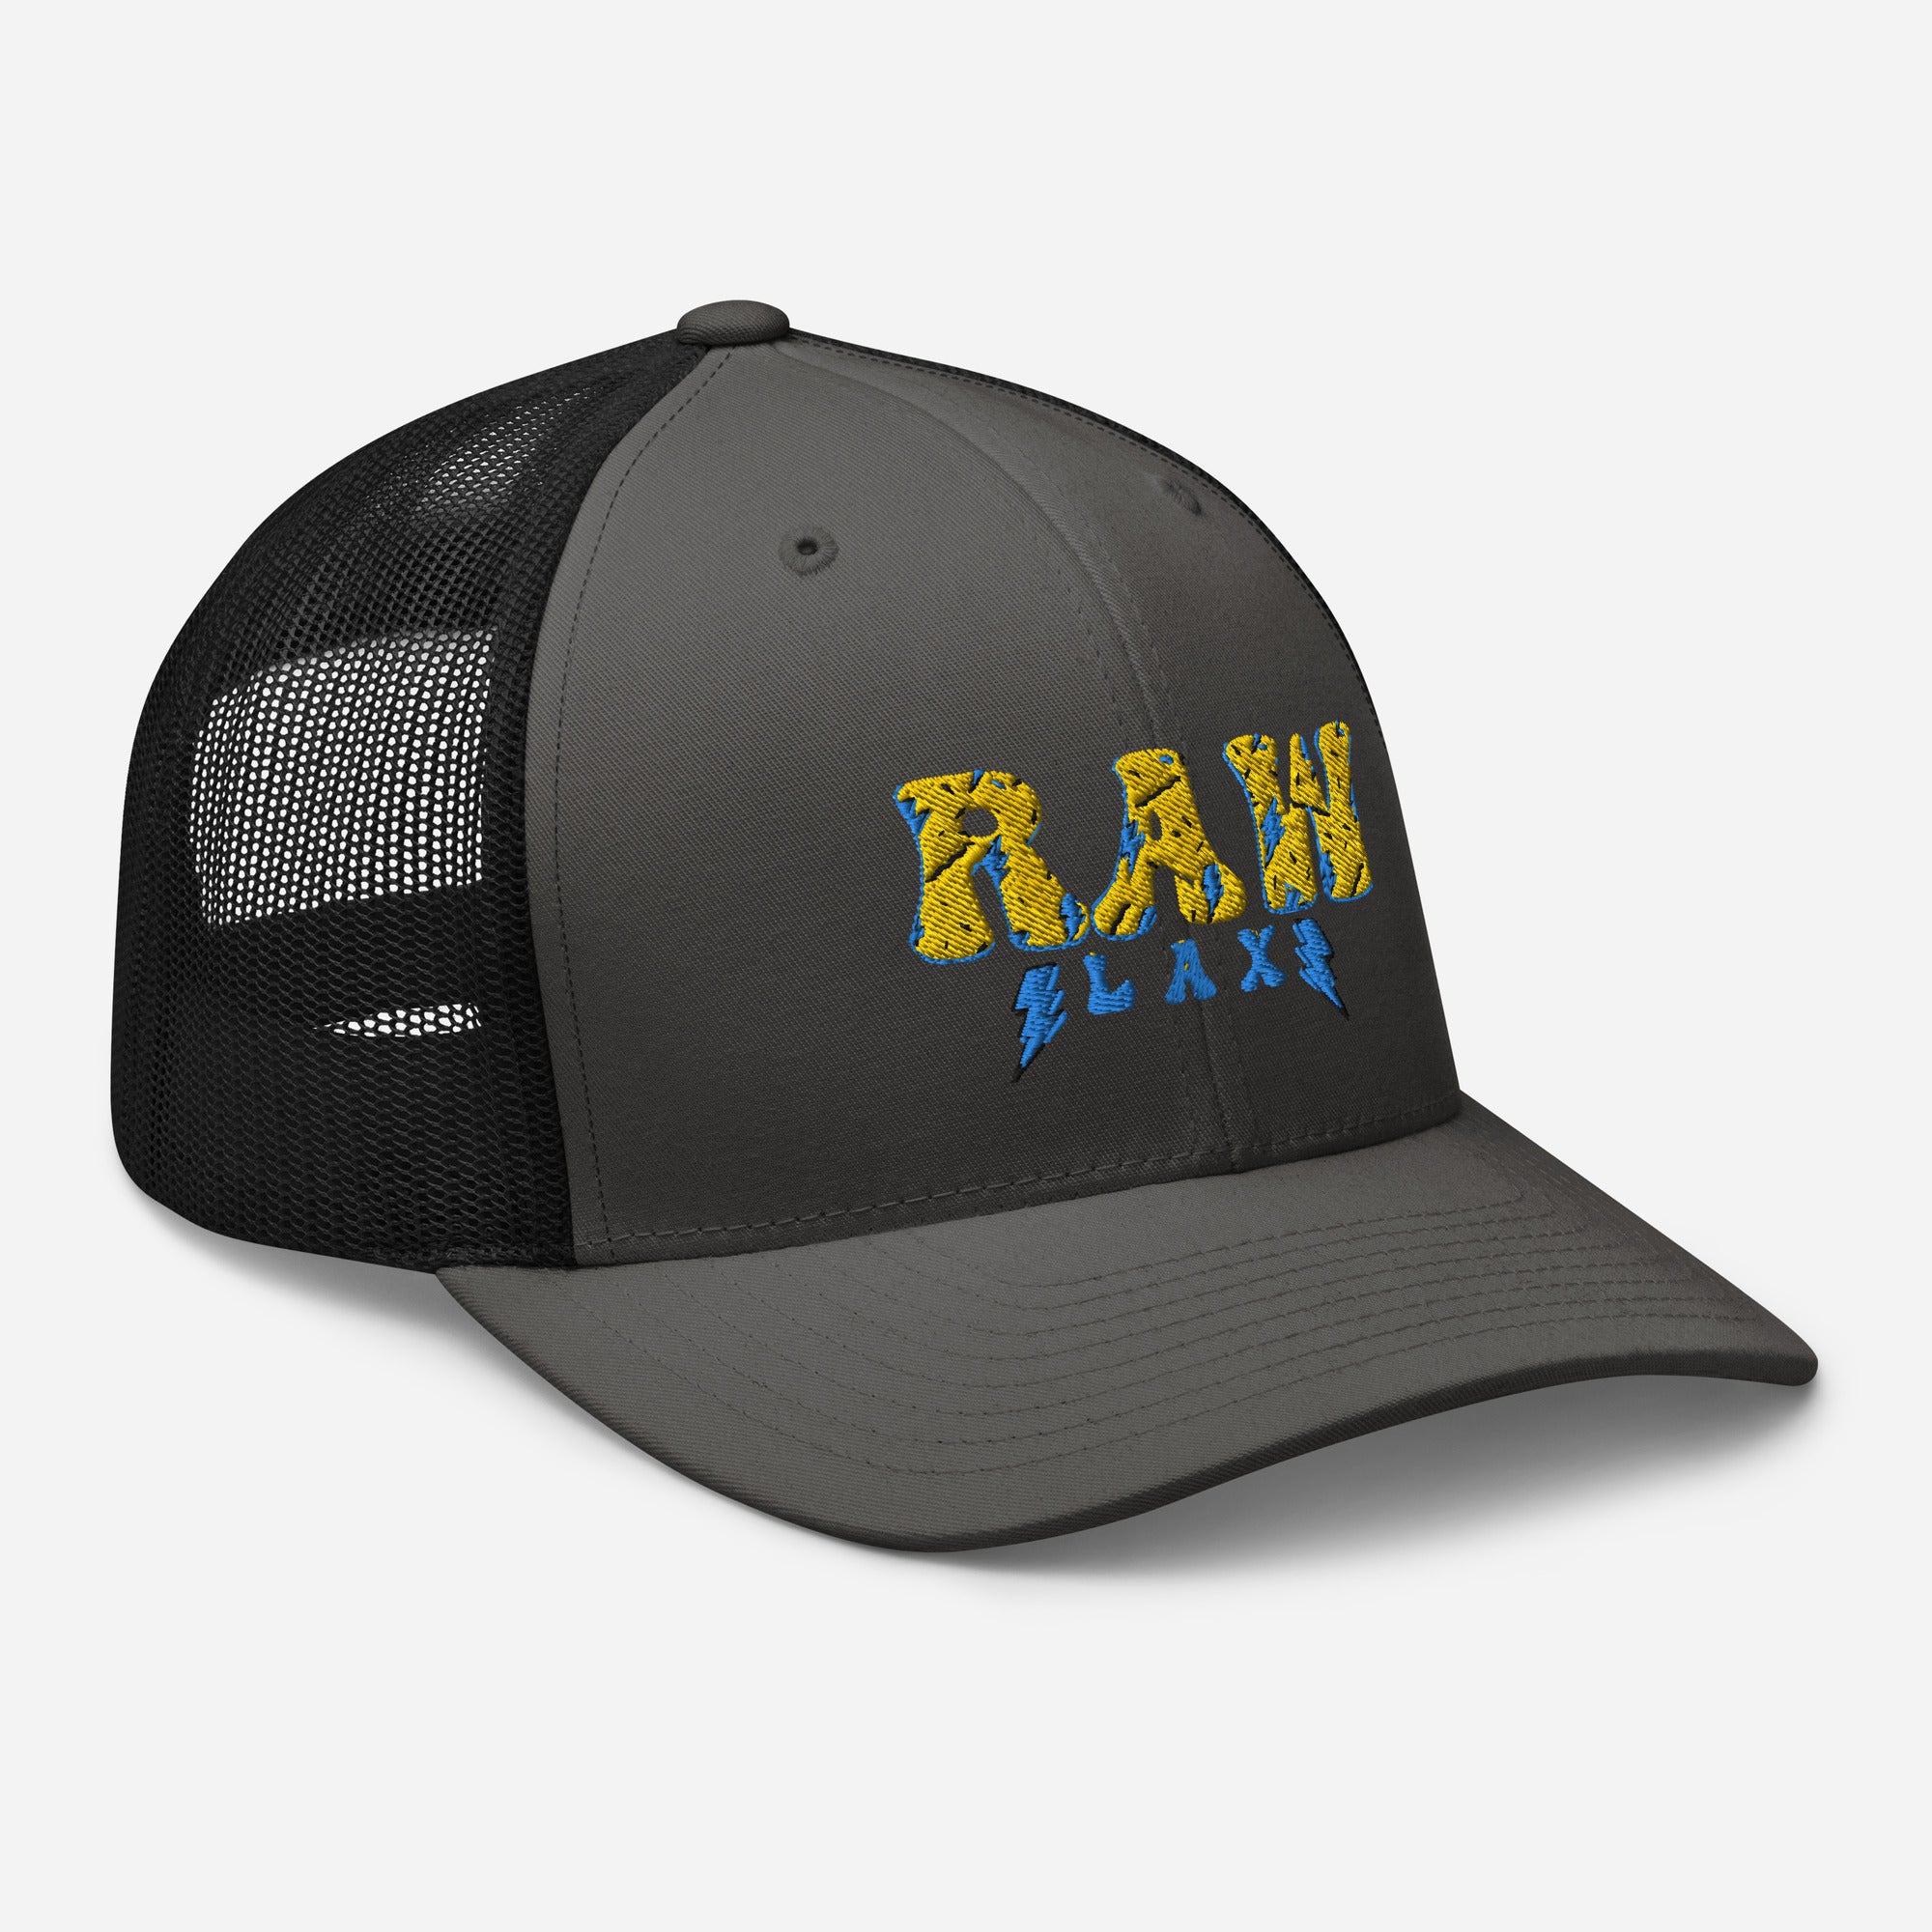 Raw Lax Trucker Cap